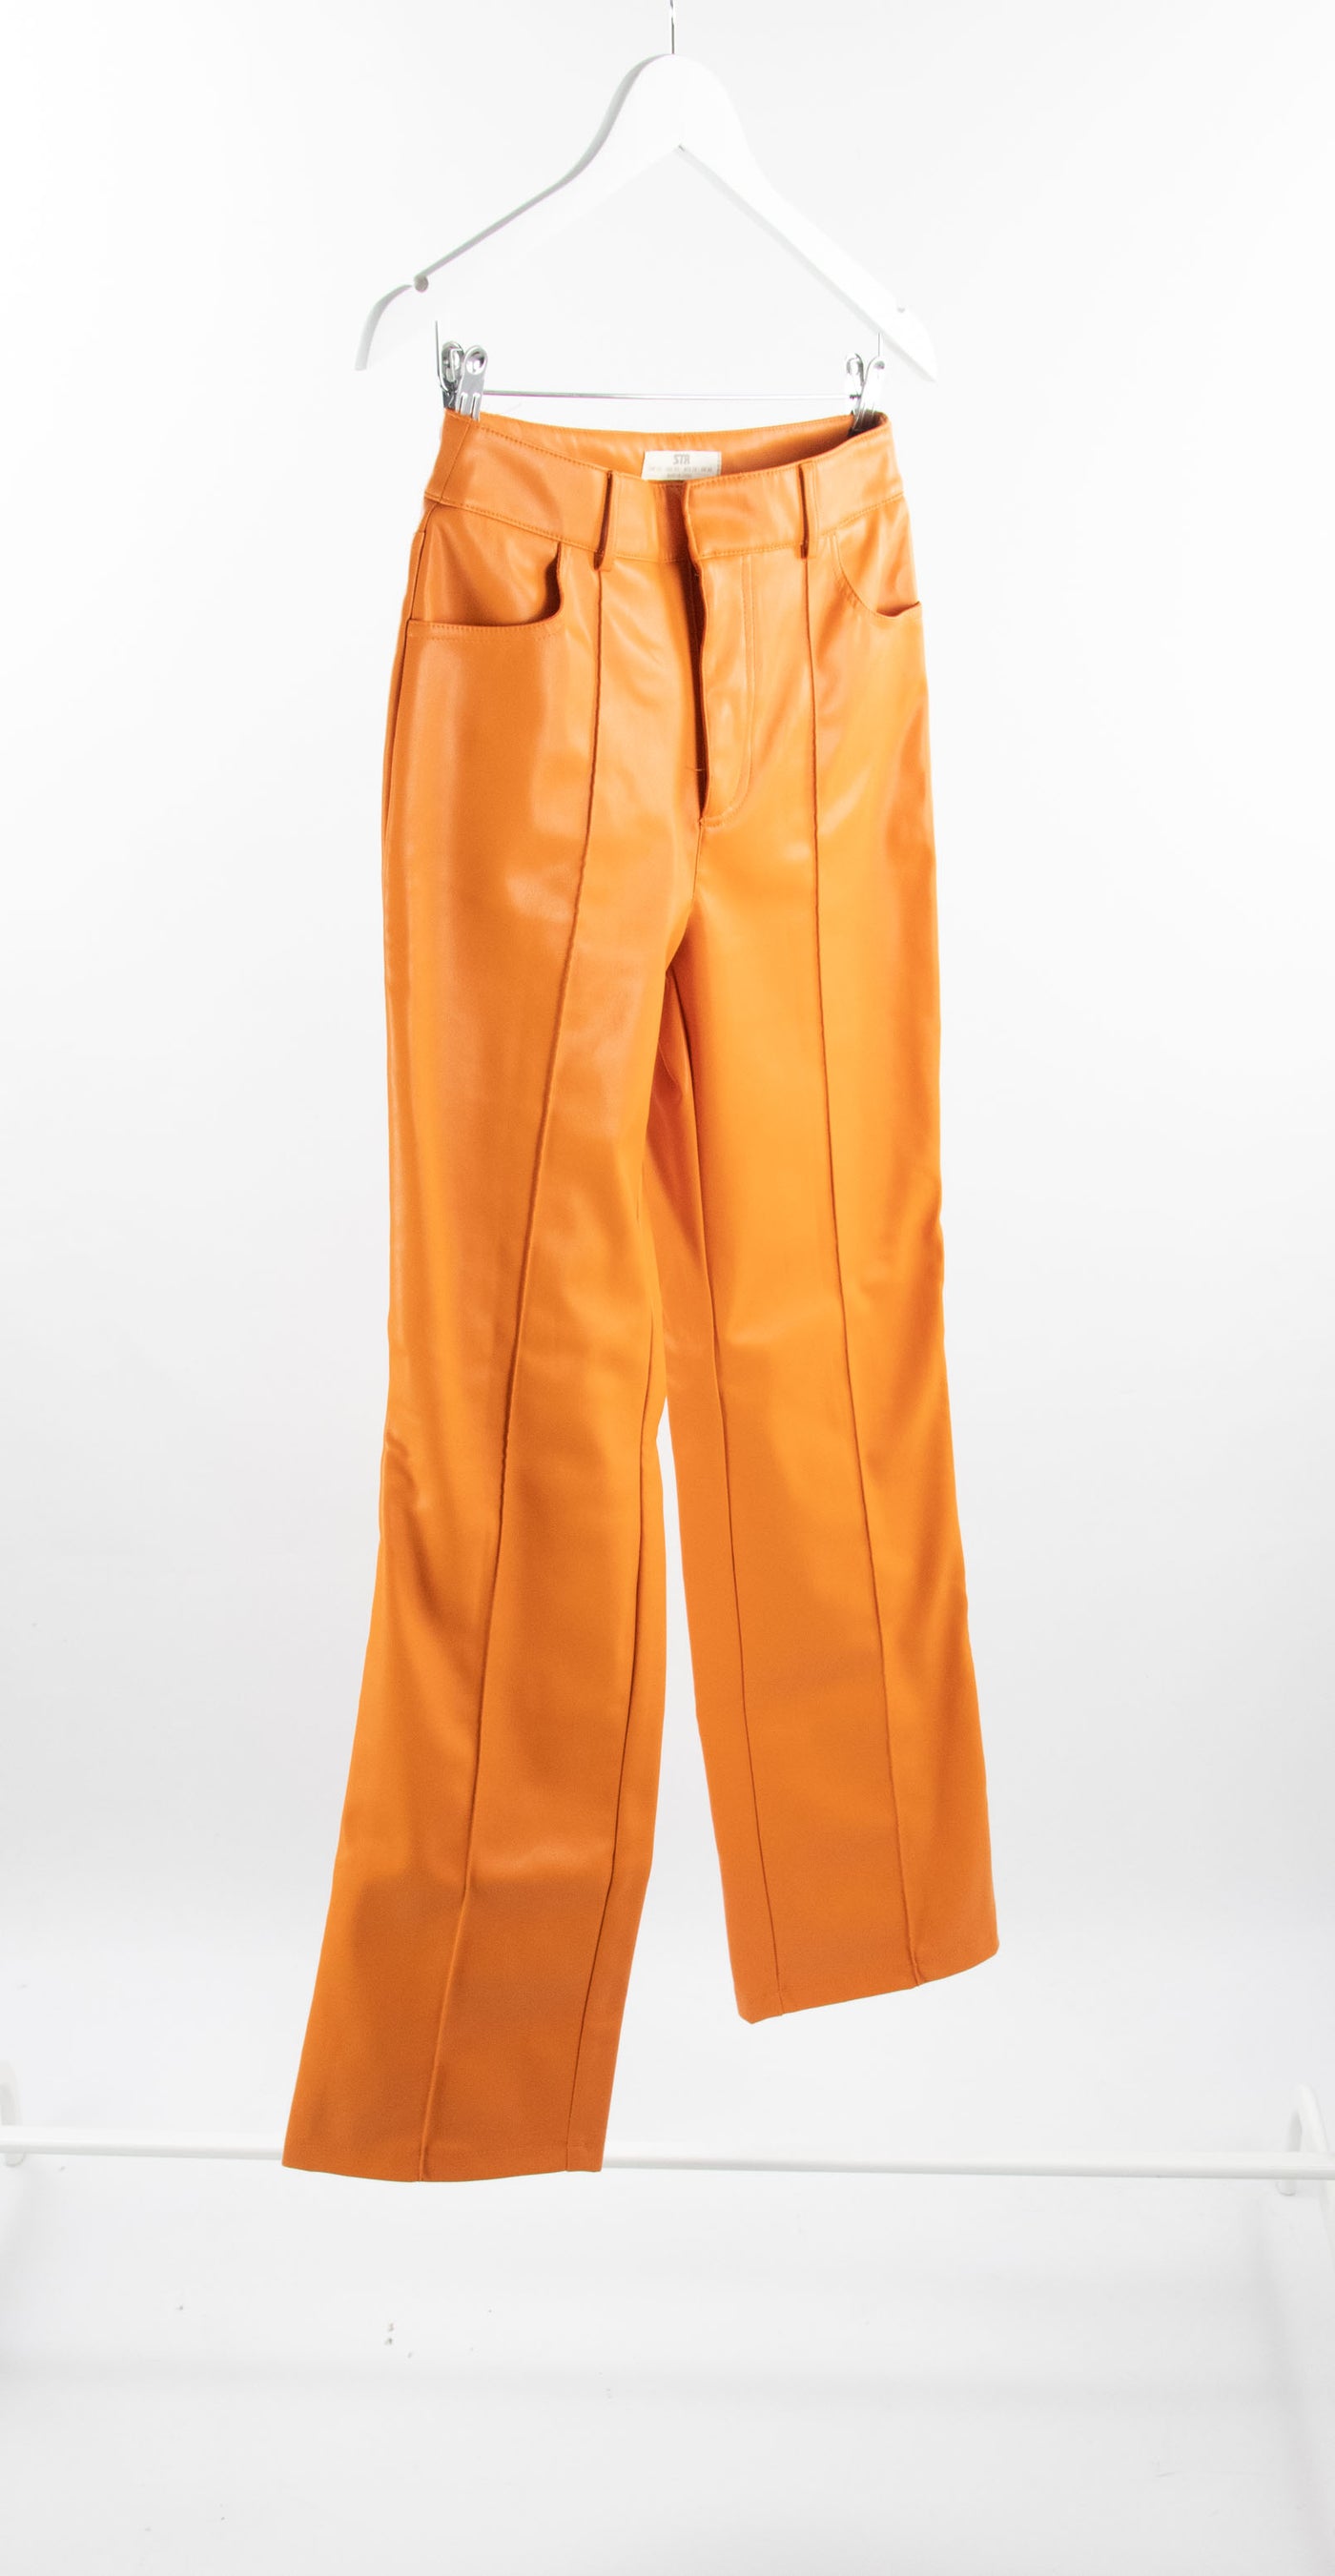 Pantalón naranja de piel